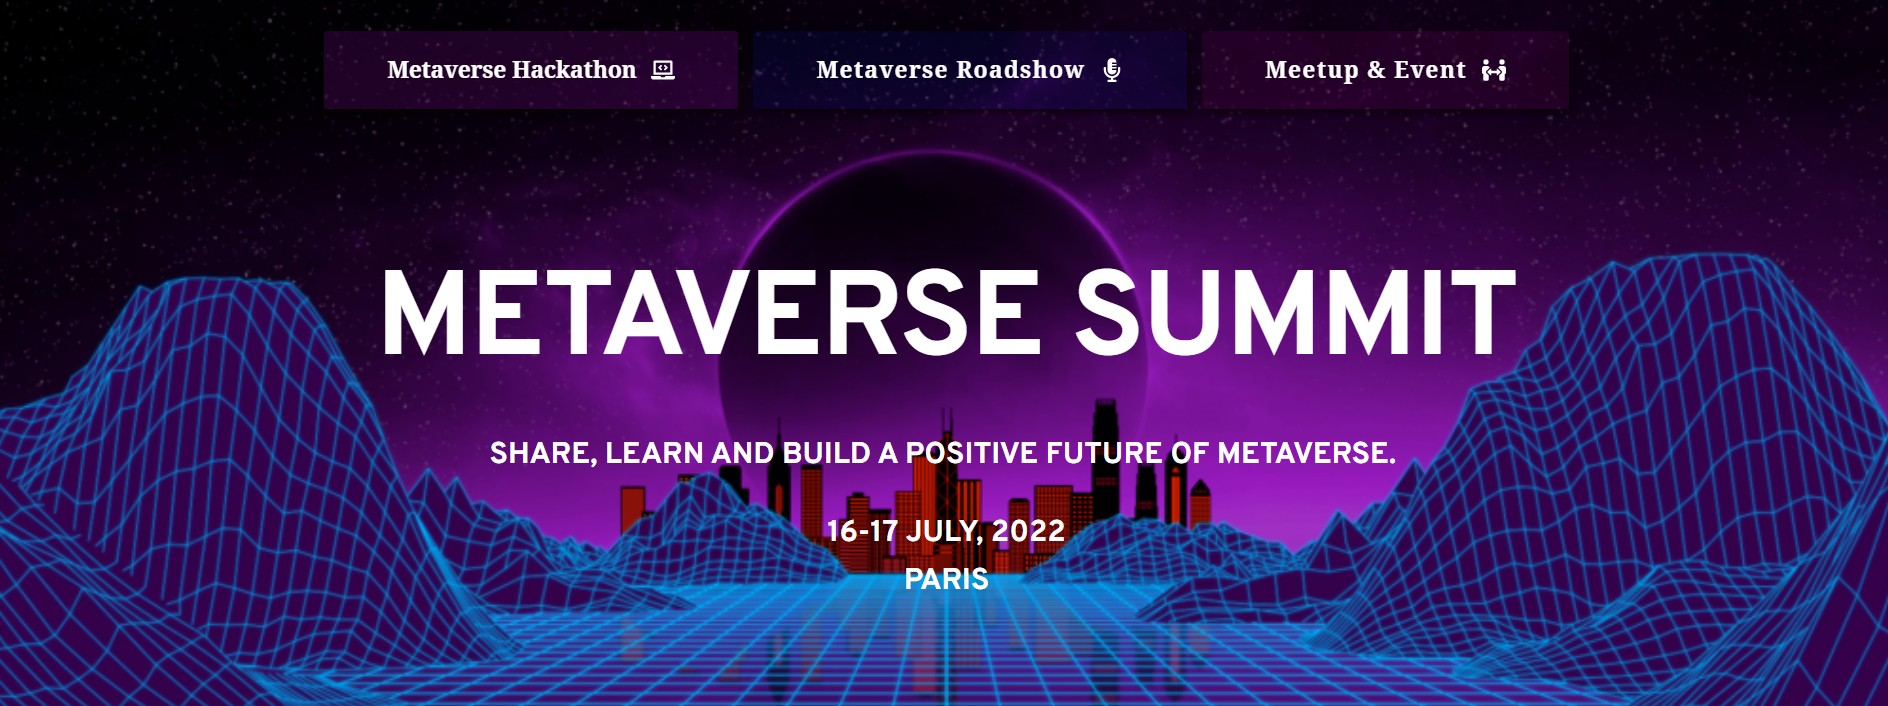 Metaverse Summit | LinkedIn